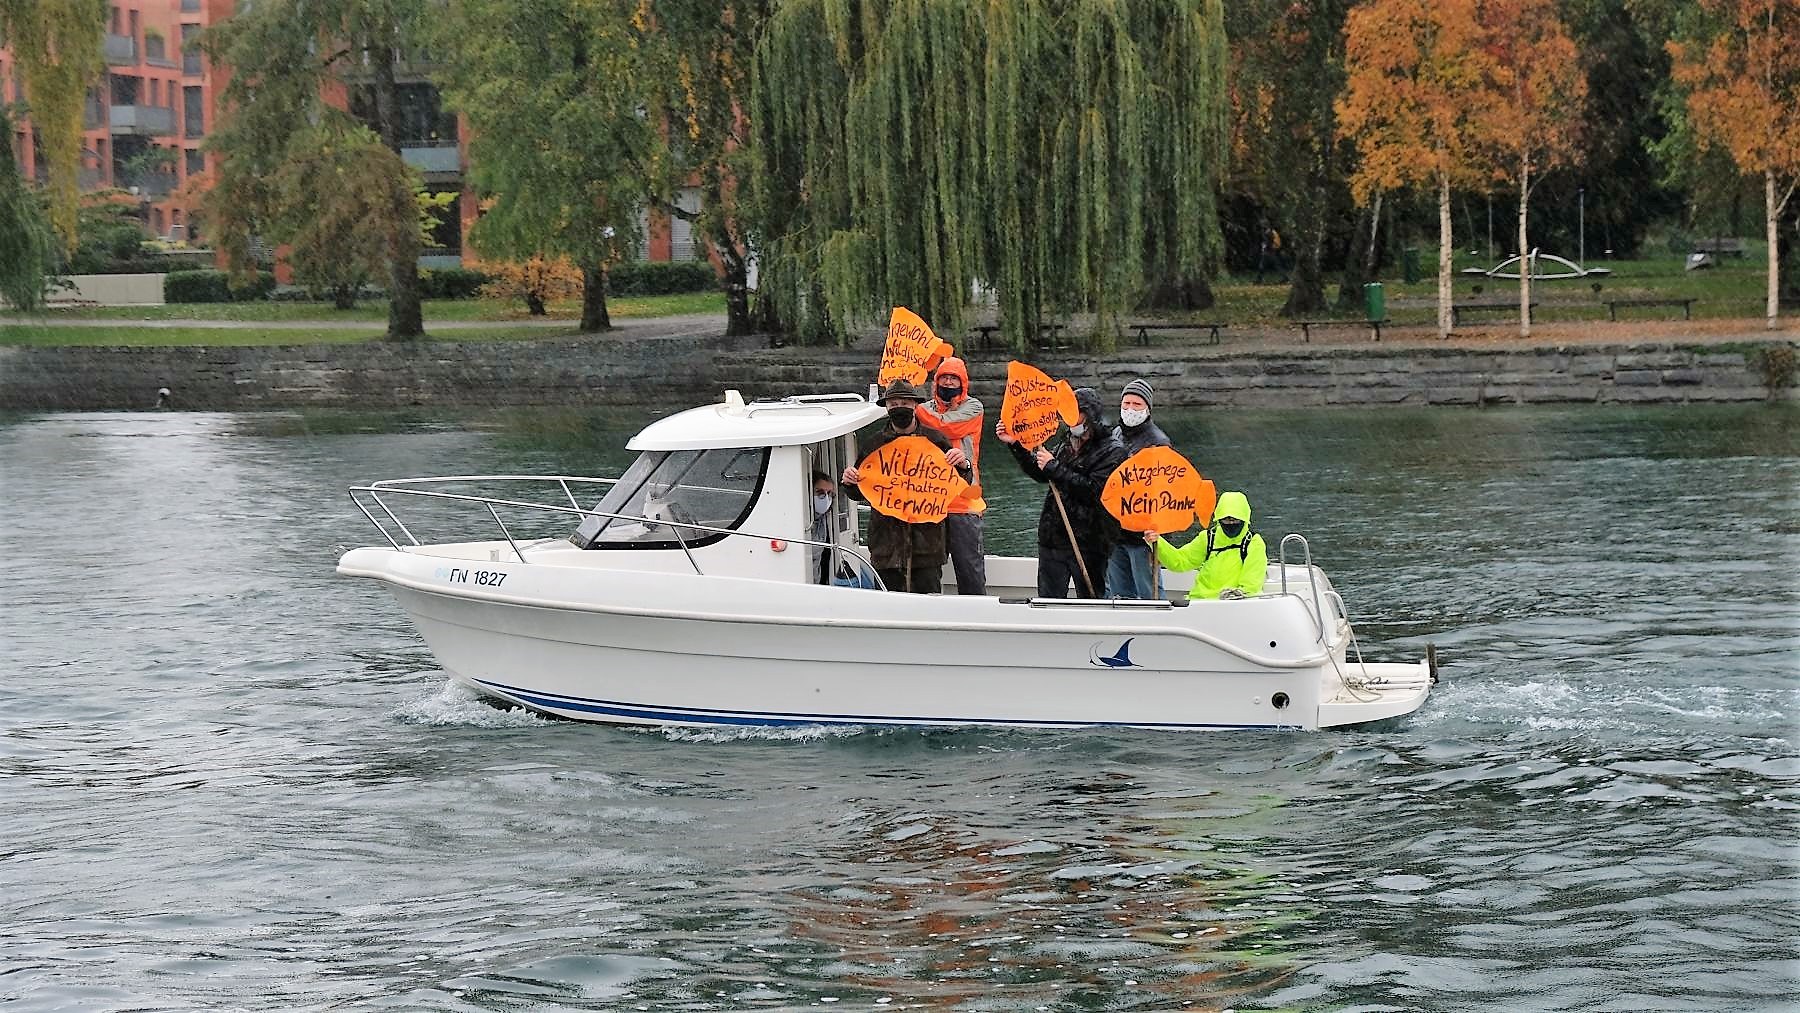 Viele Bootsführer unterstrichen den Protest mit Transparenten.